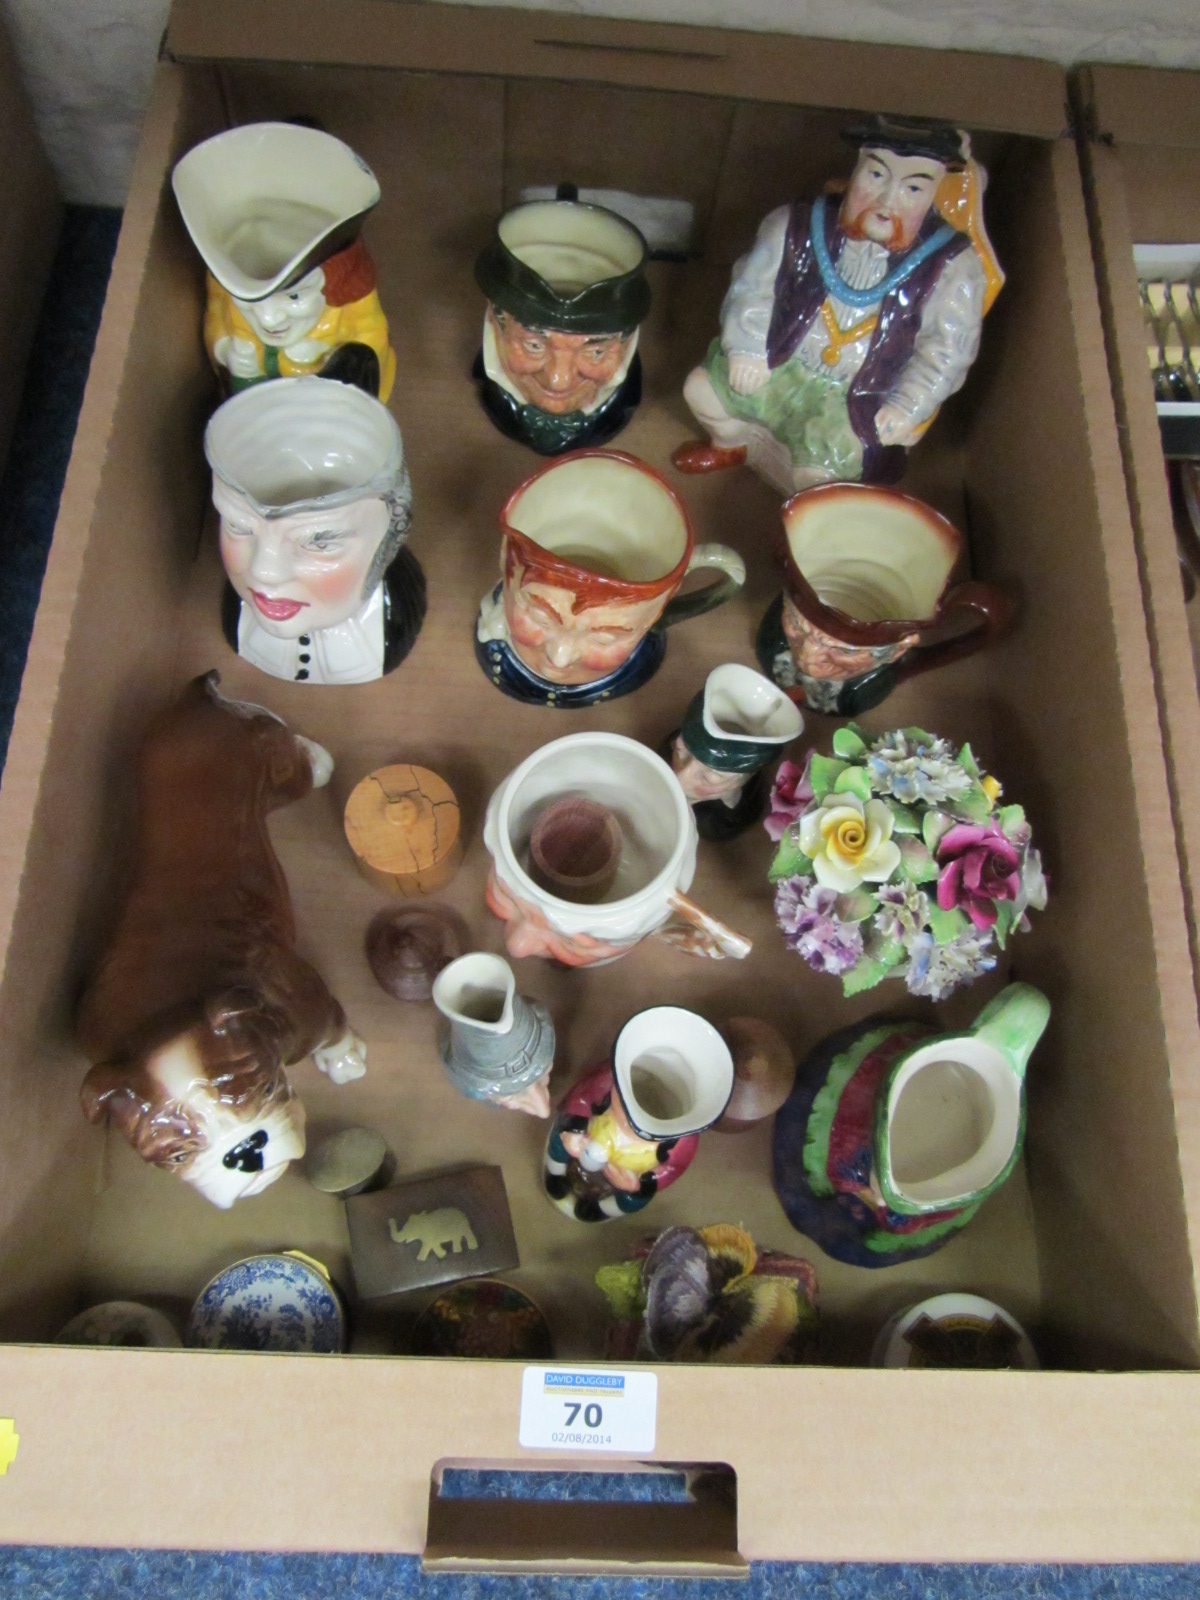 Royal Doulton character jugs, Sylvac bulldog and other ceramics in one box